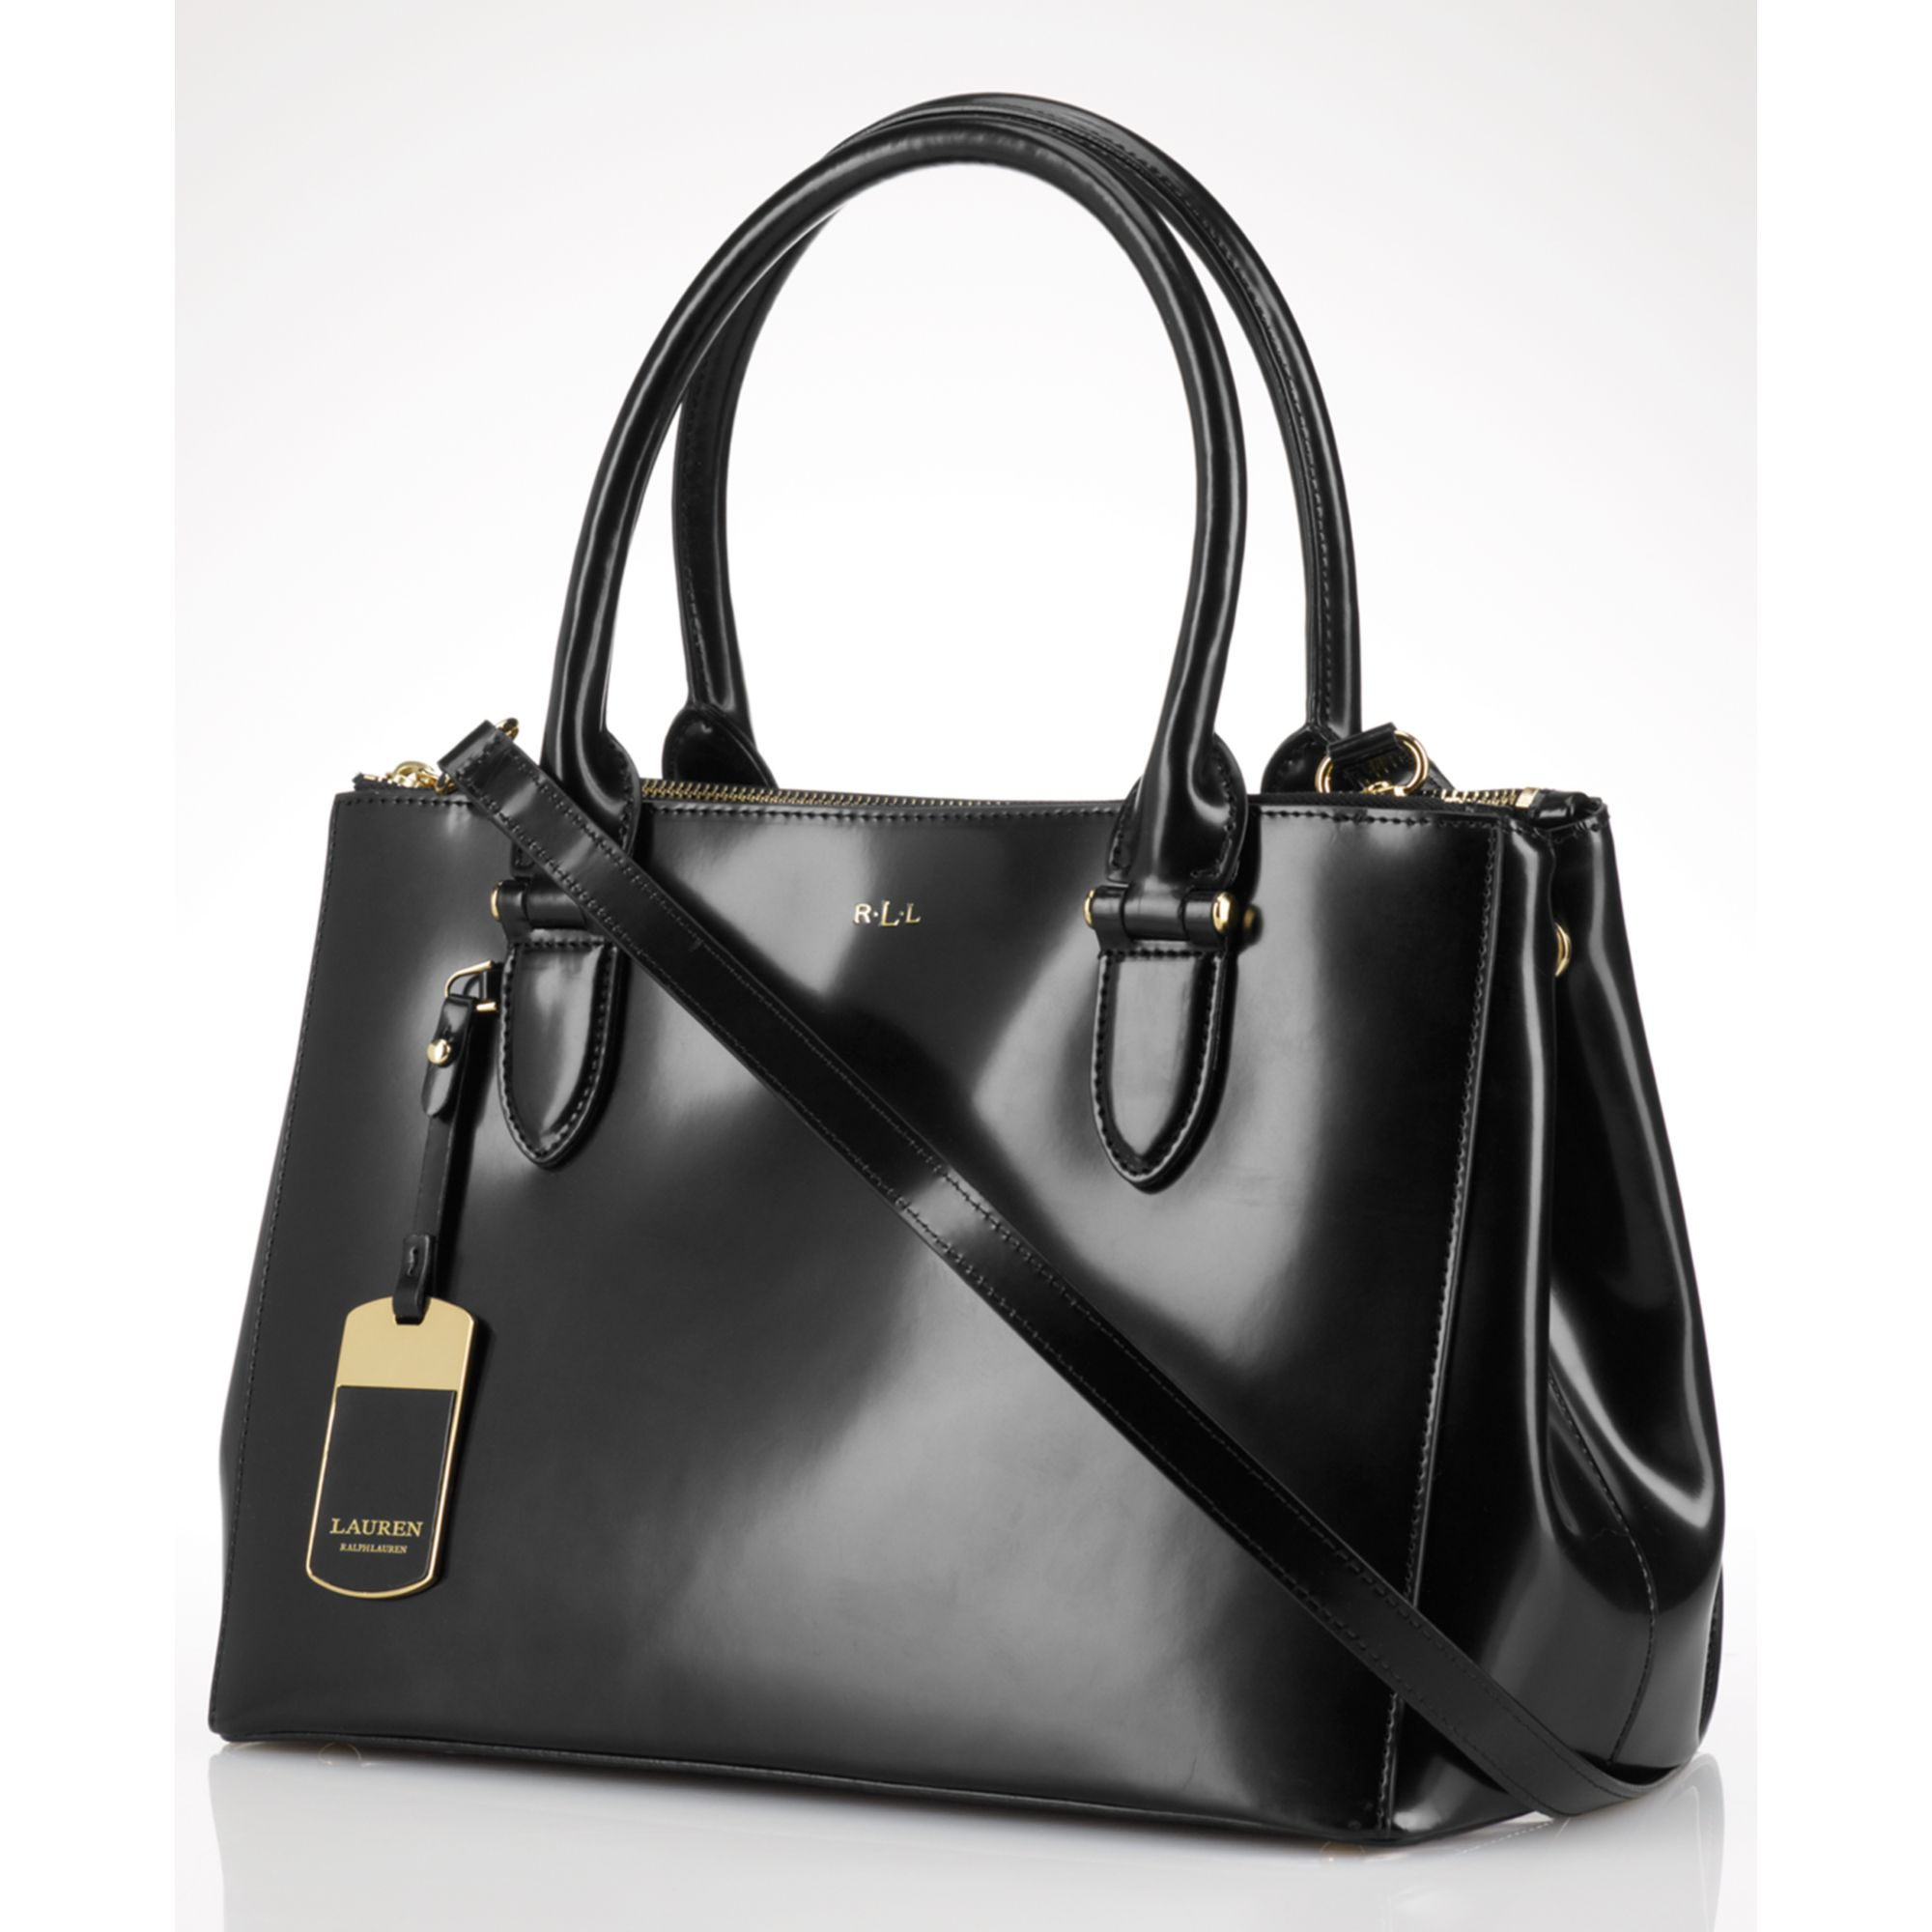 Lauren Ralph Lauren Clare Leather Tote Bag, Black